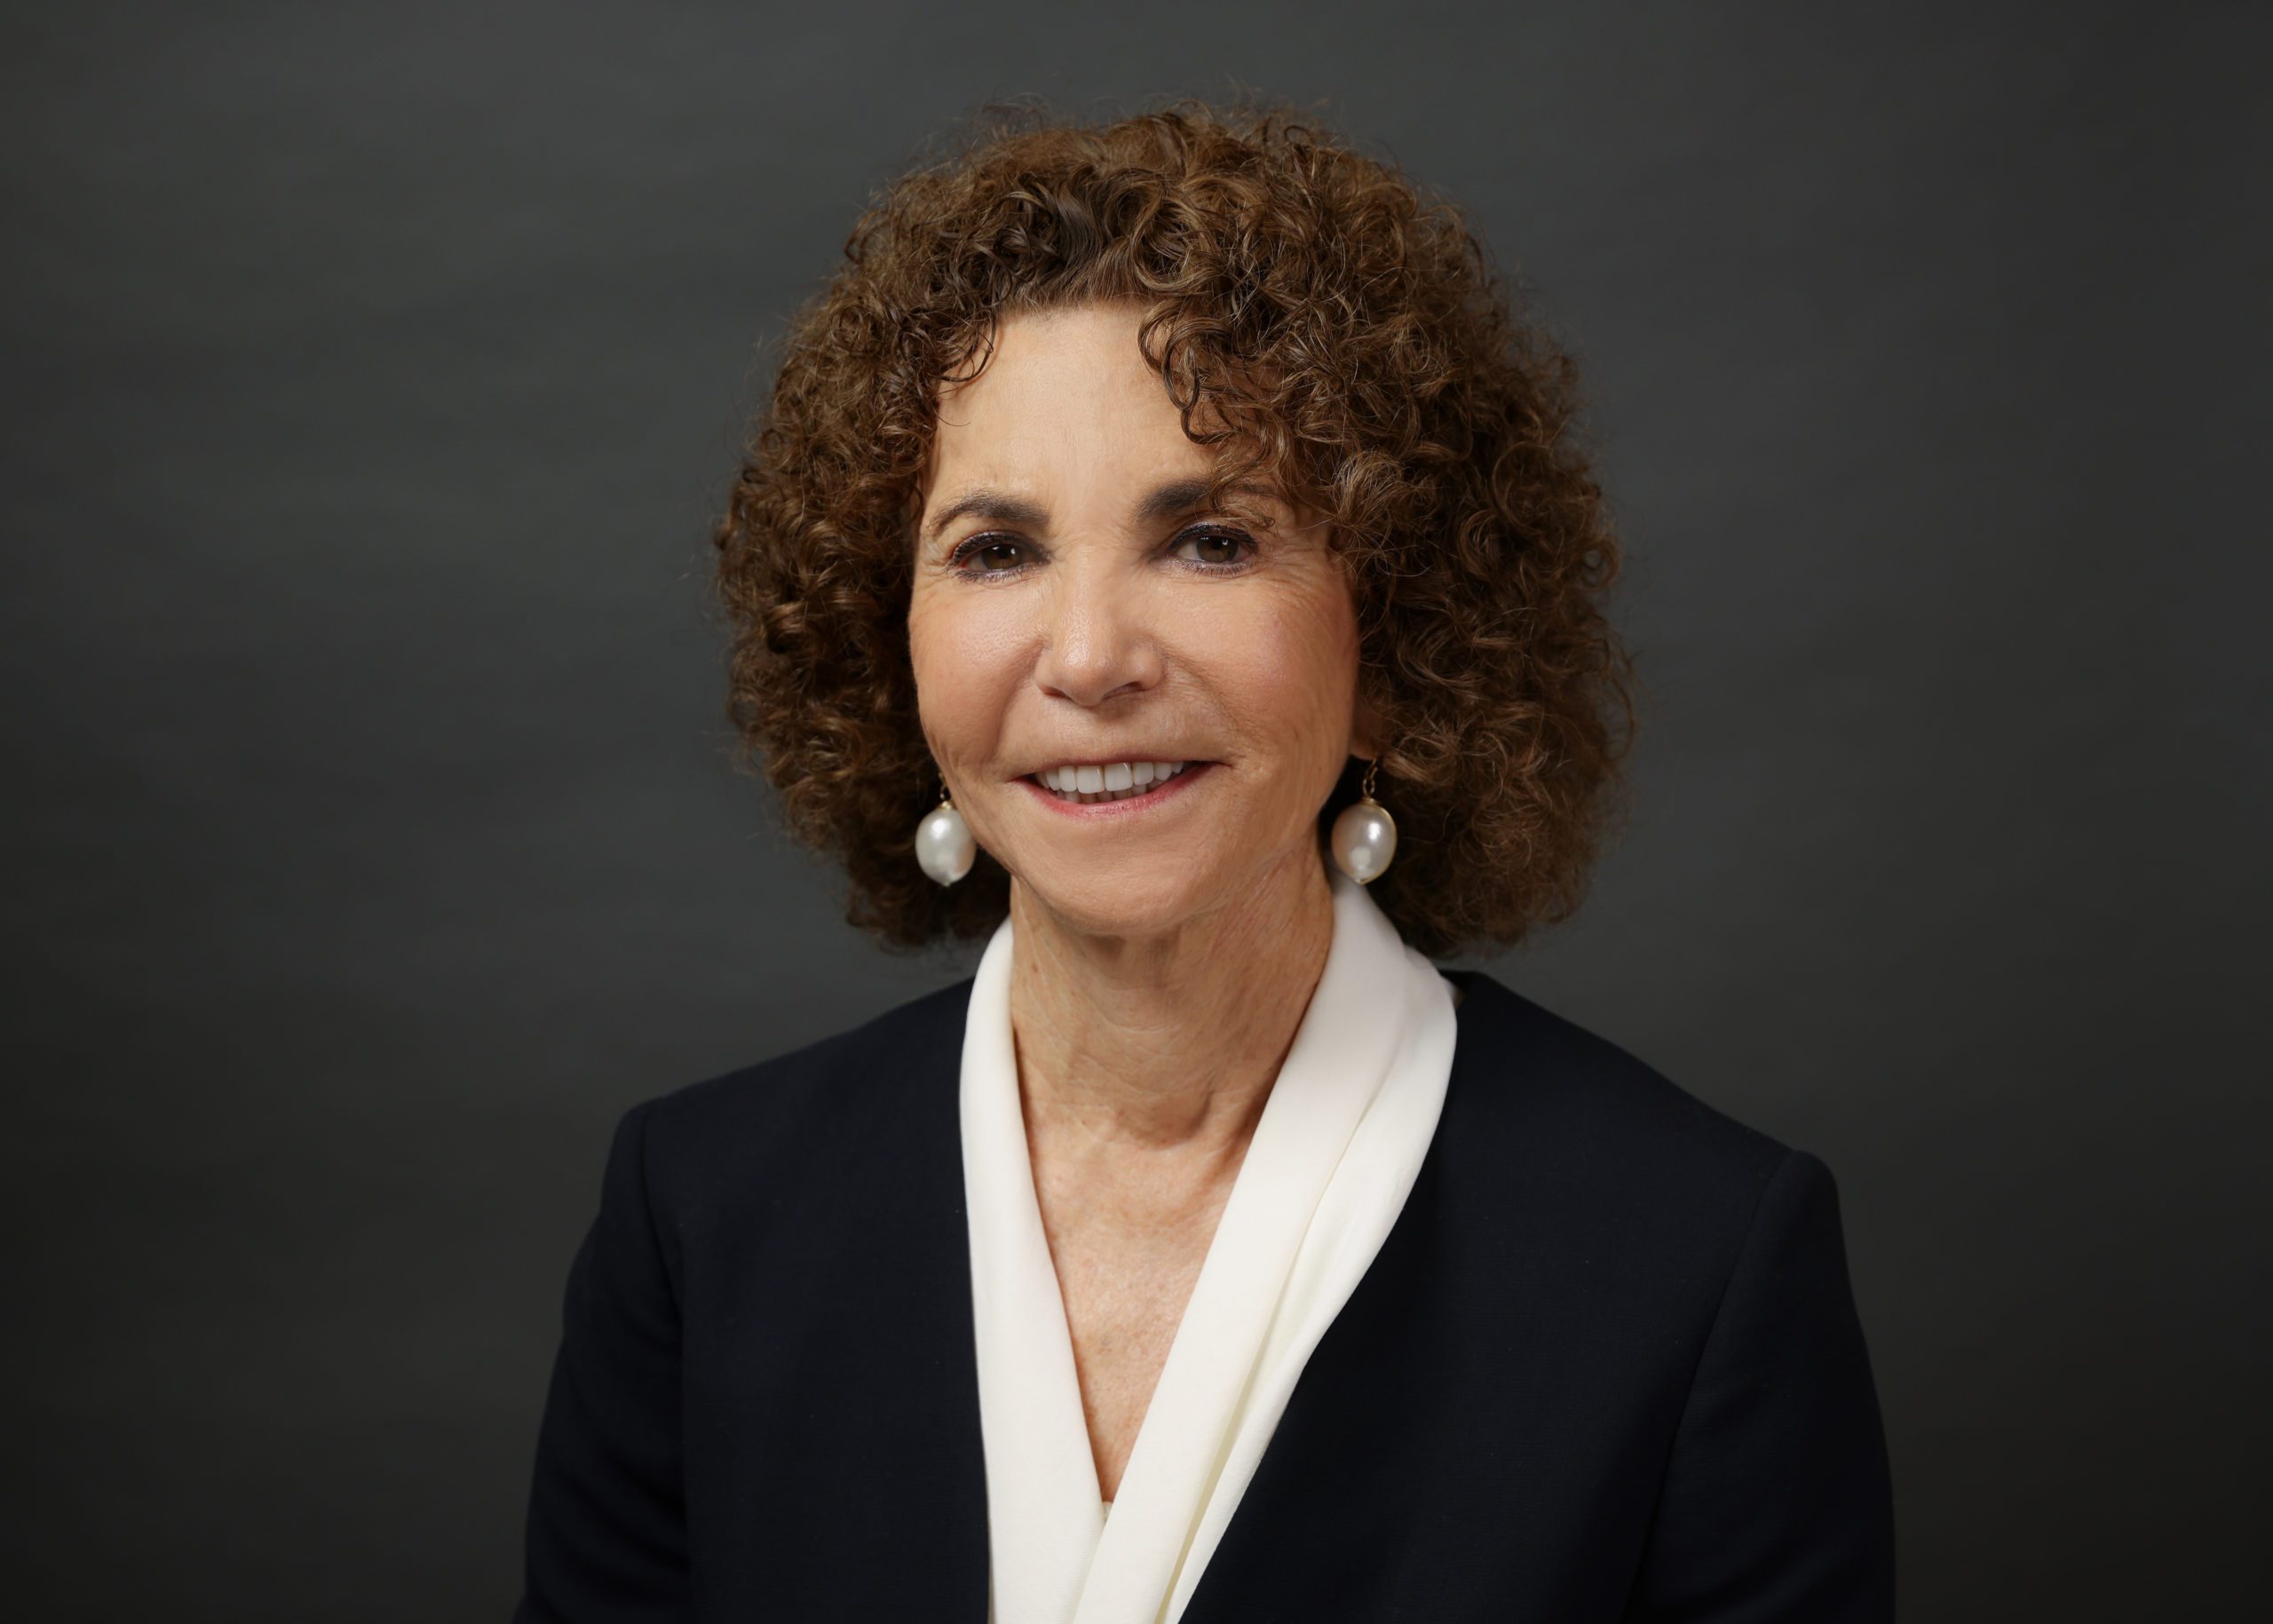 Francie M. Heller, Board of Trustees